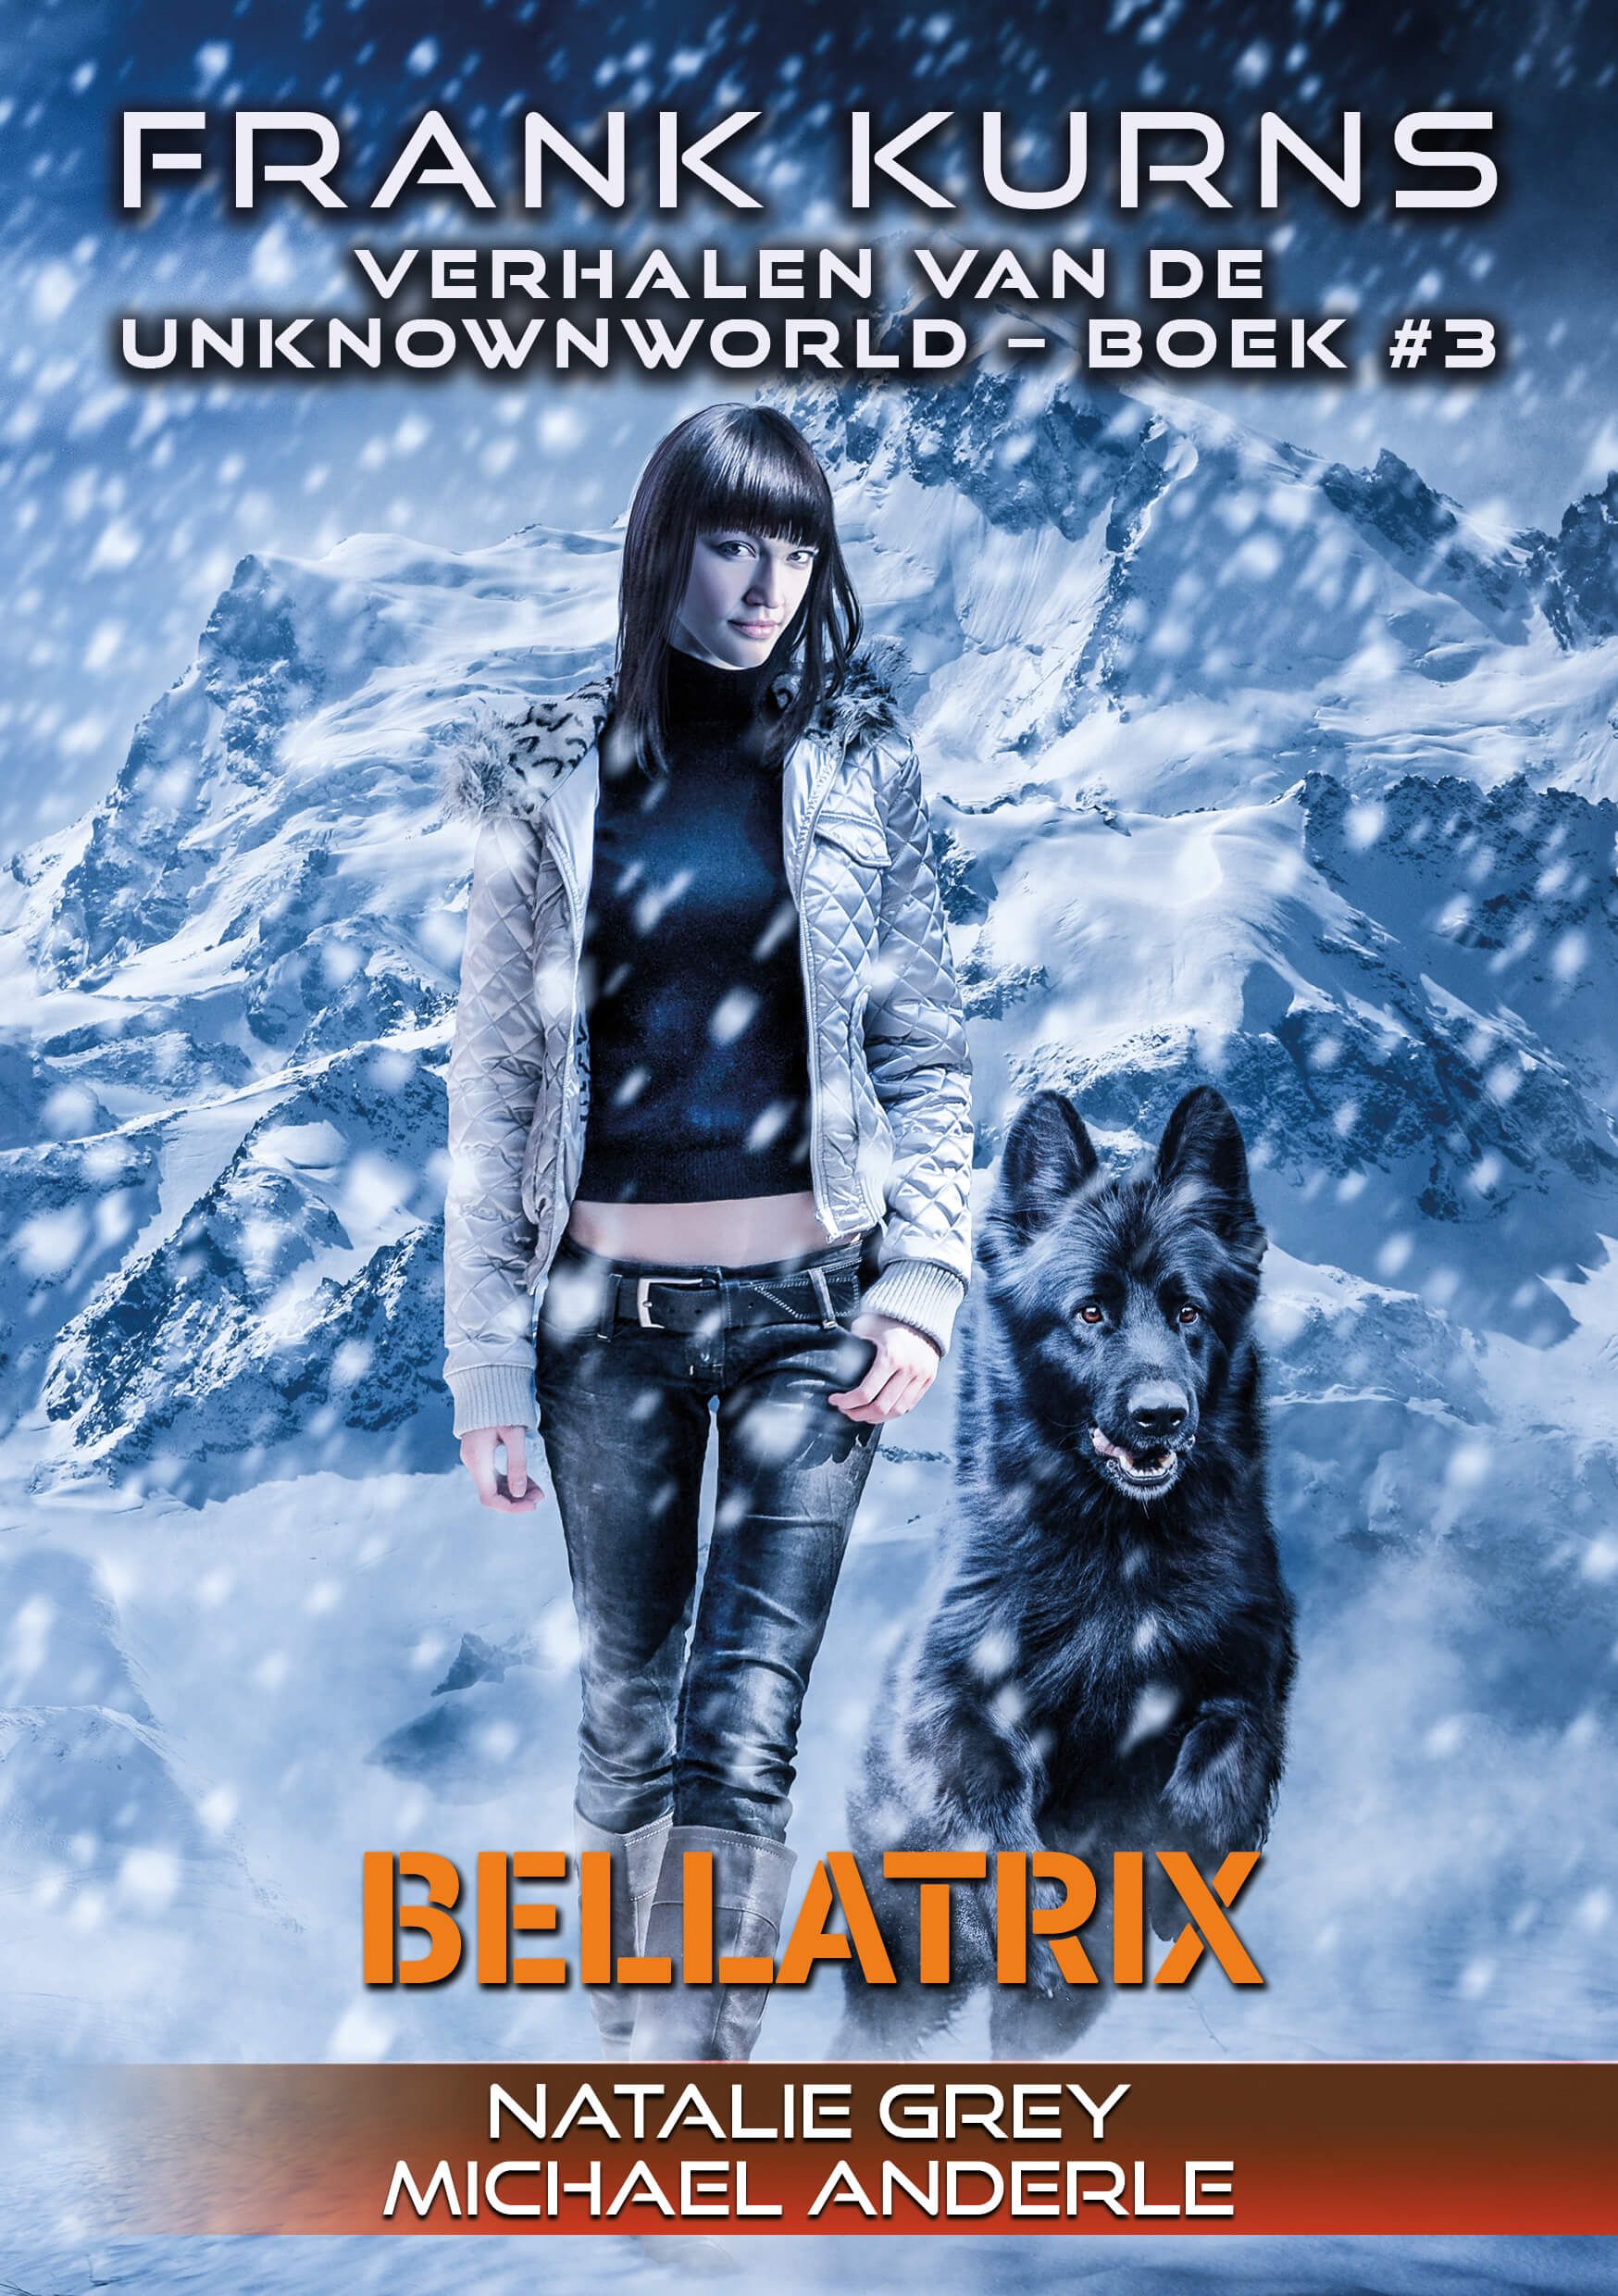 Frank Kurns; Verhalen van de UnknownWorld # 3, Bellatrix